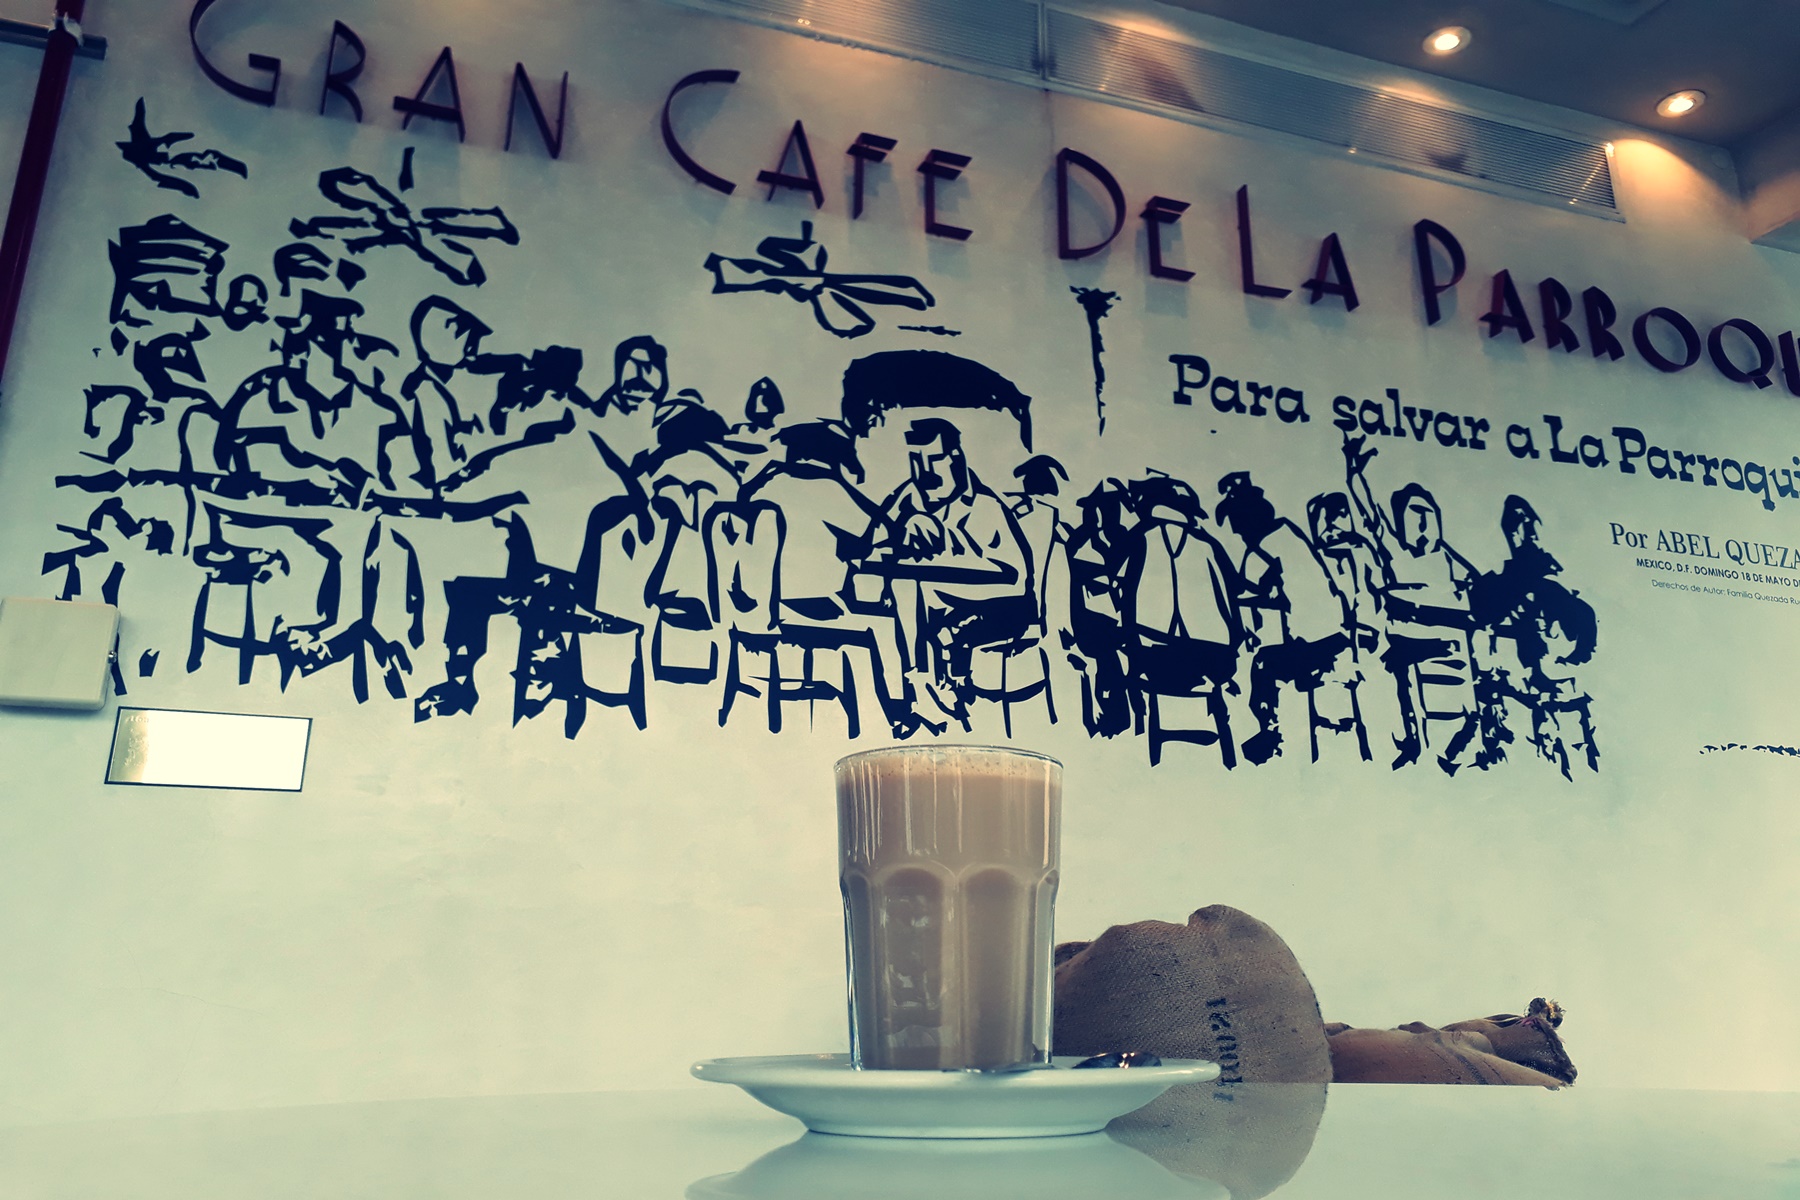 Gran Café de la Parroquia, el jolgorio jarocho - Identidad Veracruz